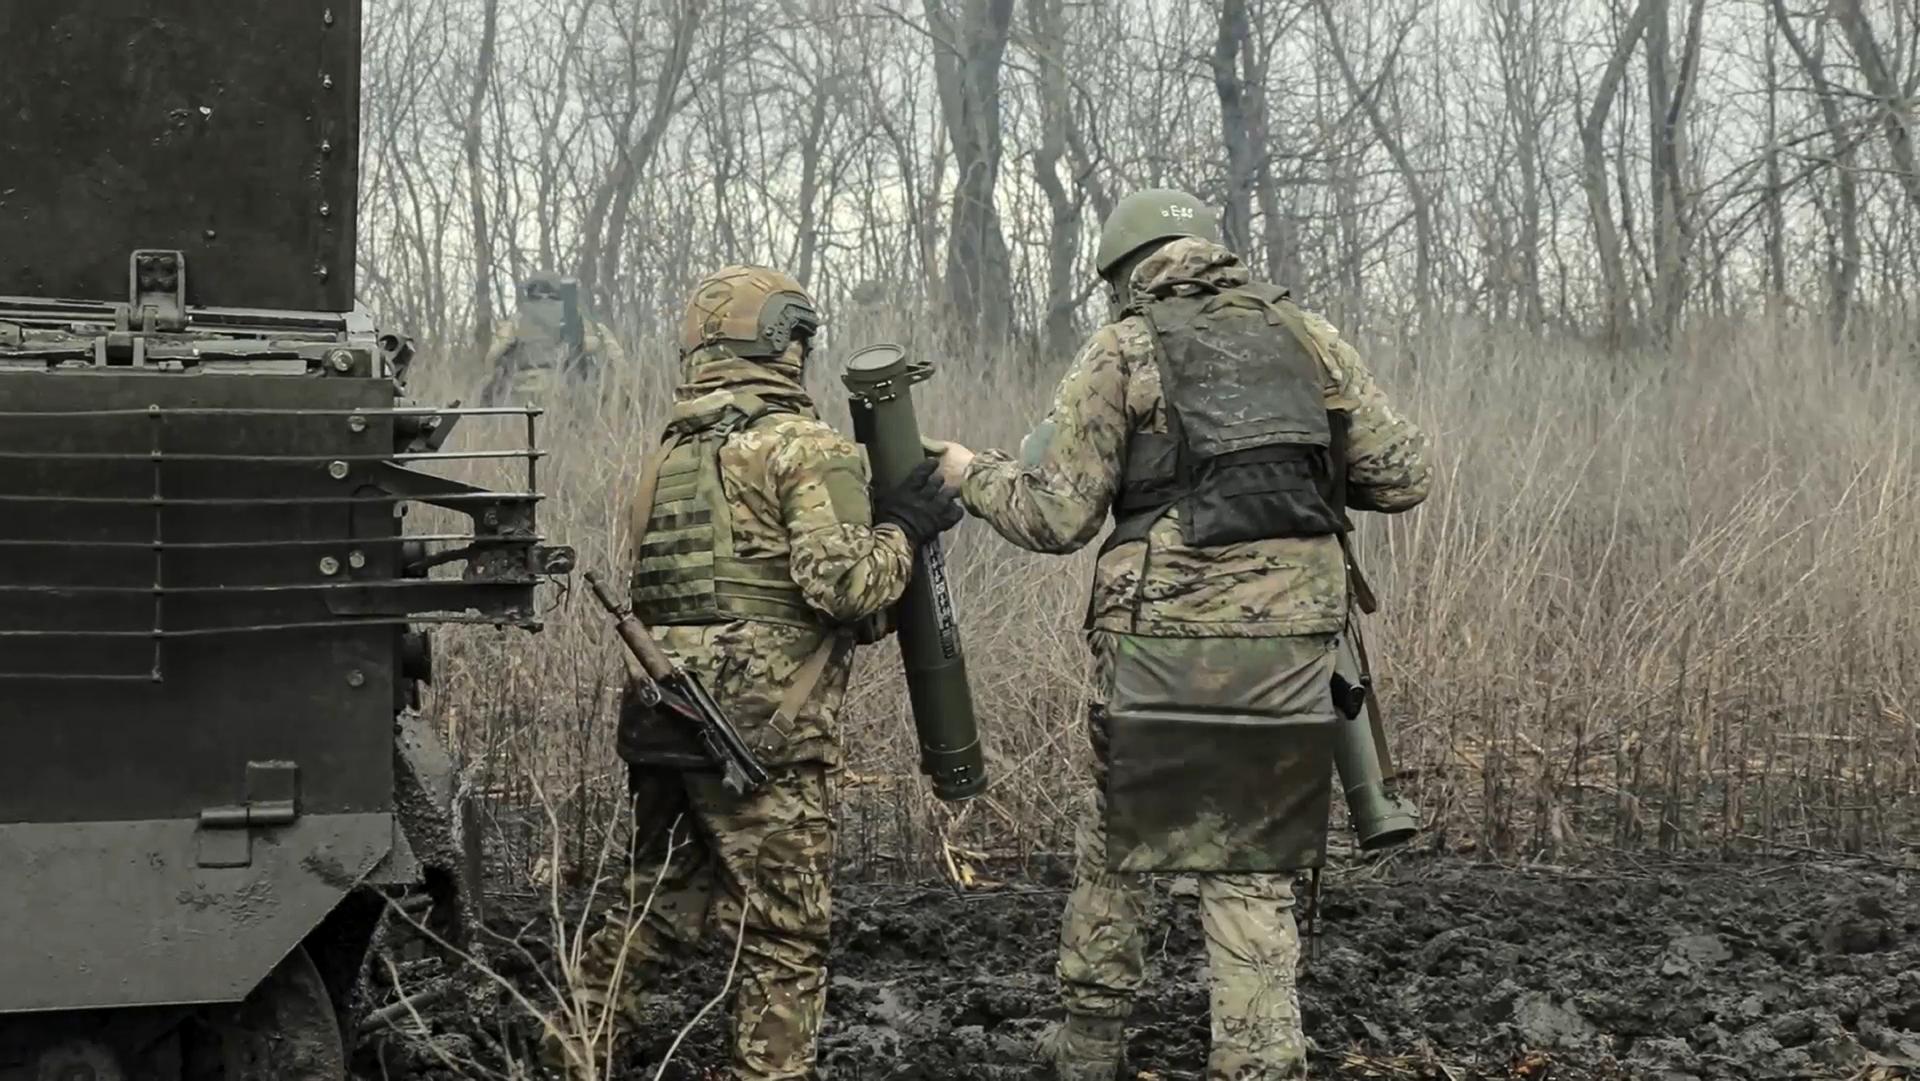 Päť kilometrov za desať dní. Ruské invázne sily dosiahli na Ukrajine významný postup